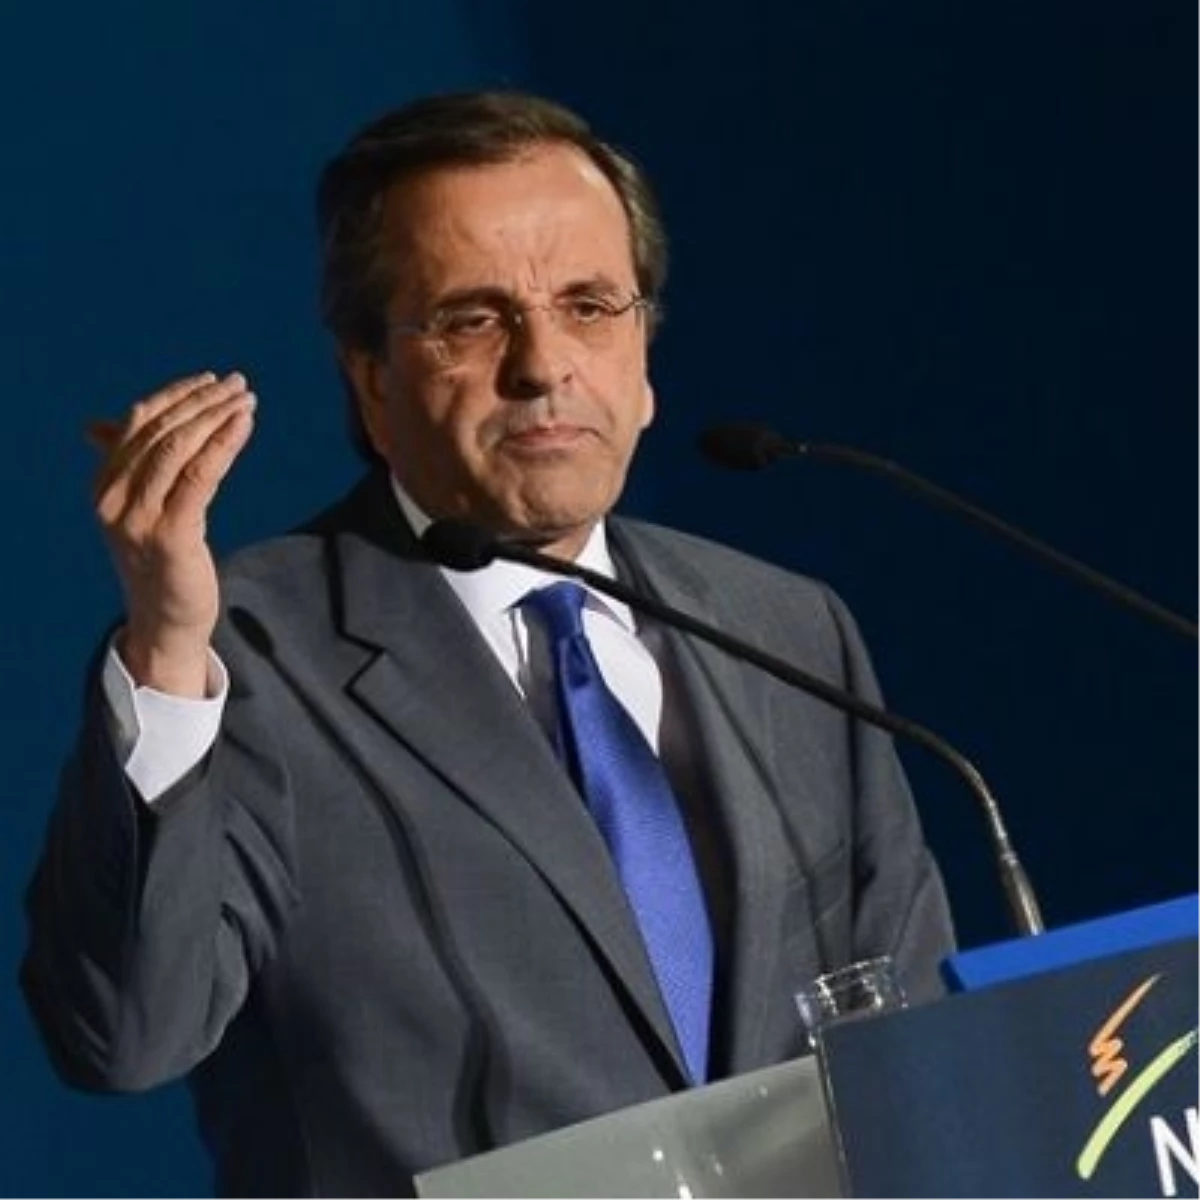 Yunanistan Başbakanı Samaras Açıklaması